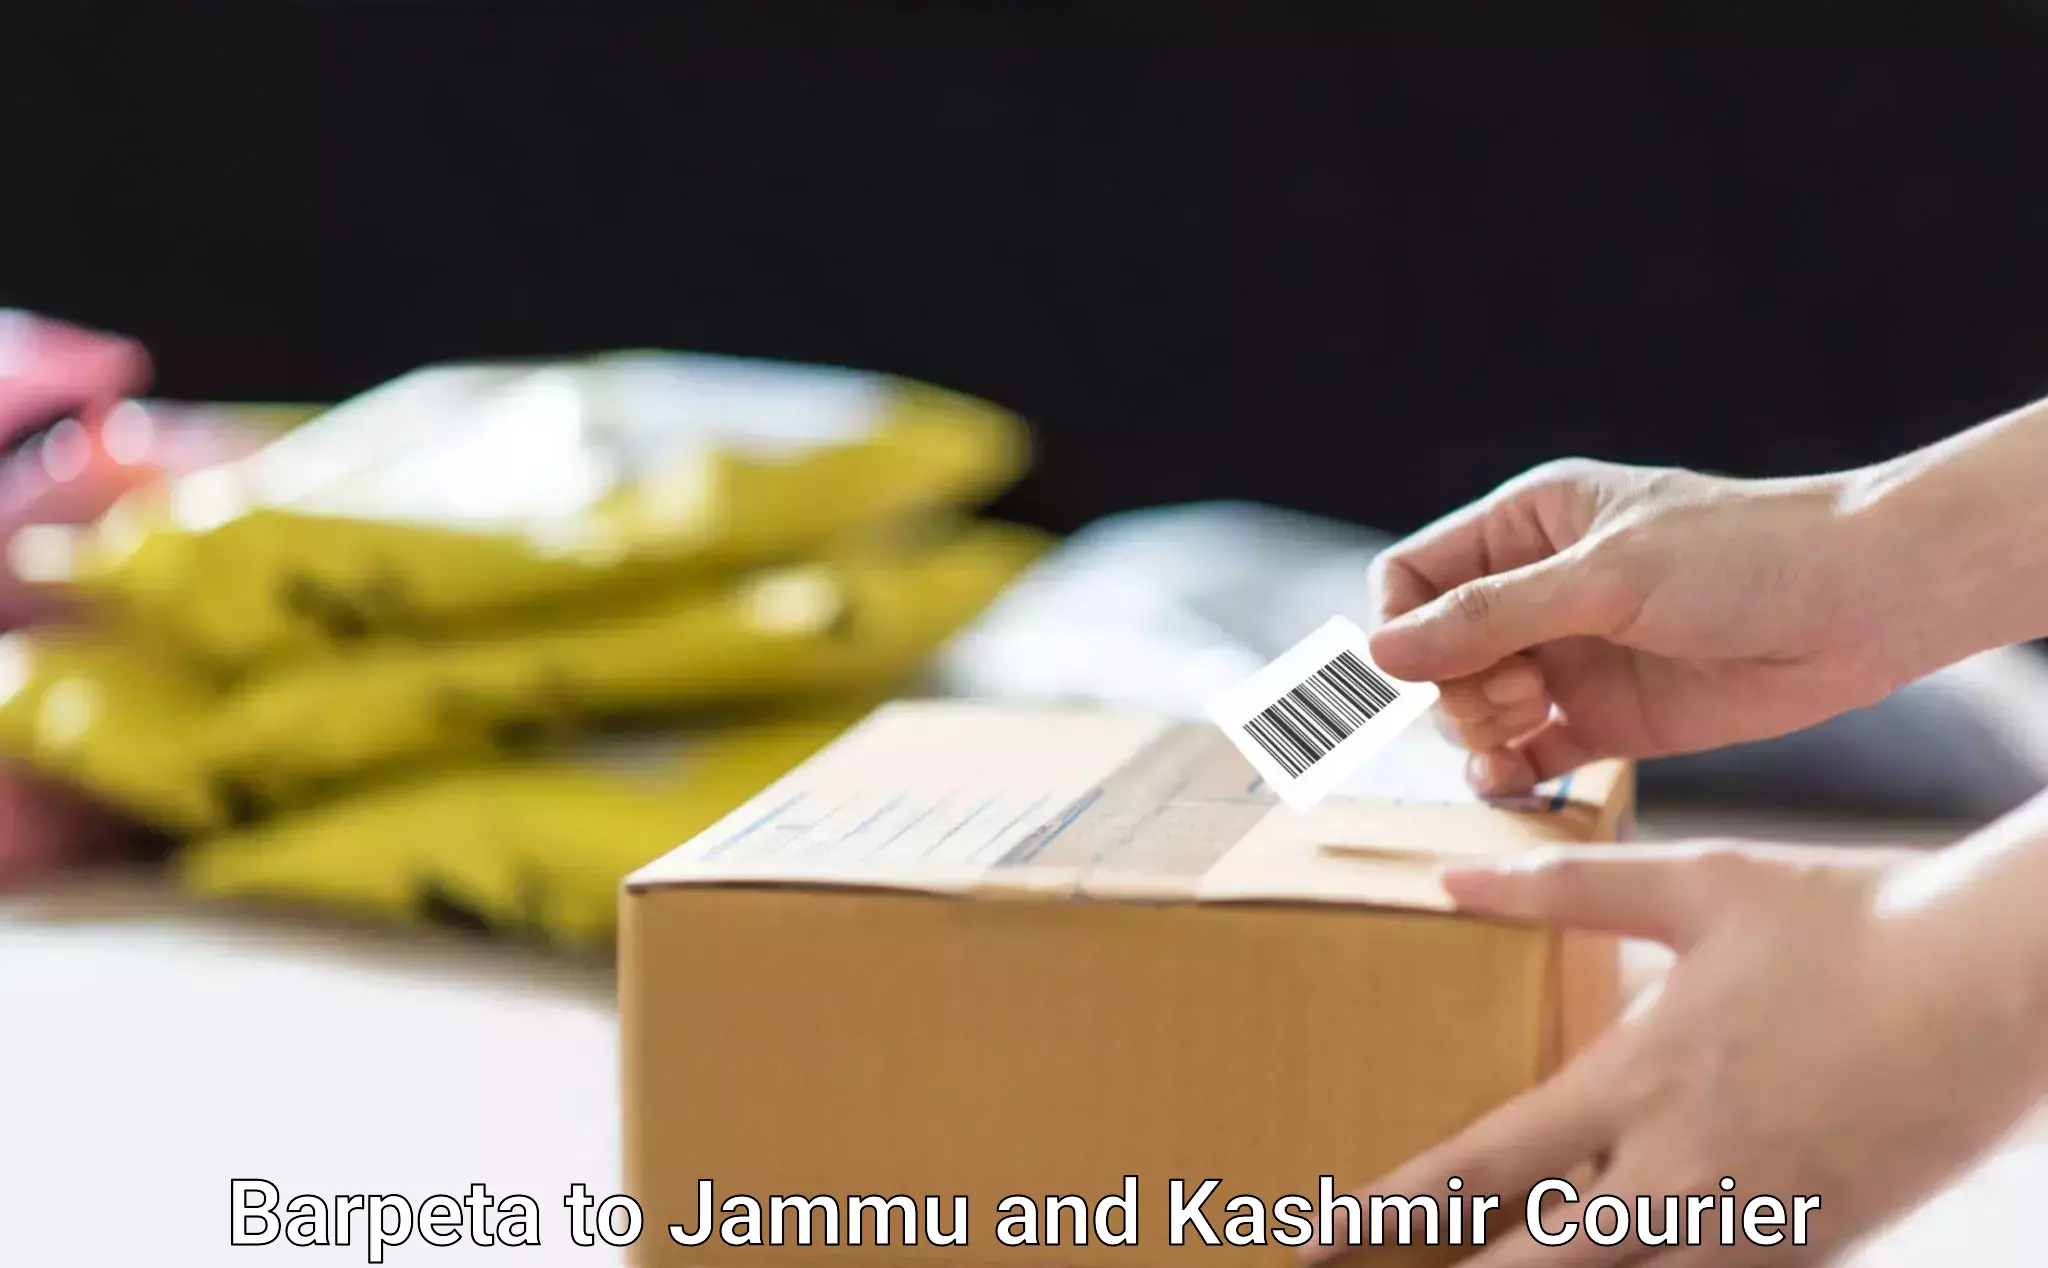 Express shipping Barpeta to Jammu and Kashmir